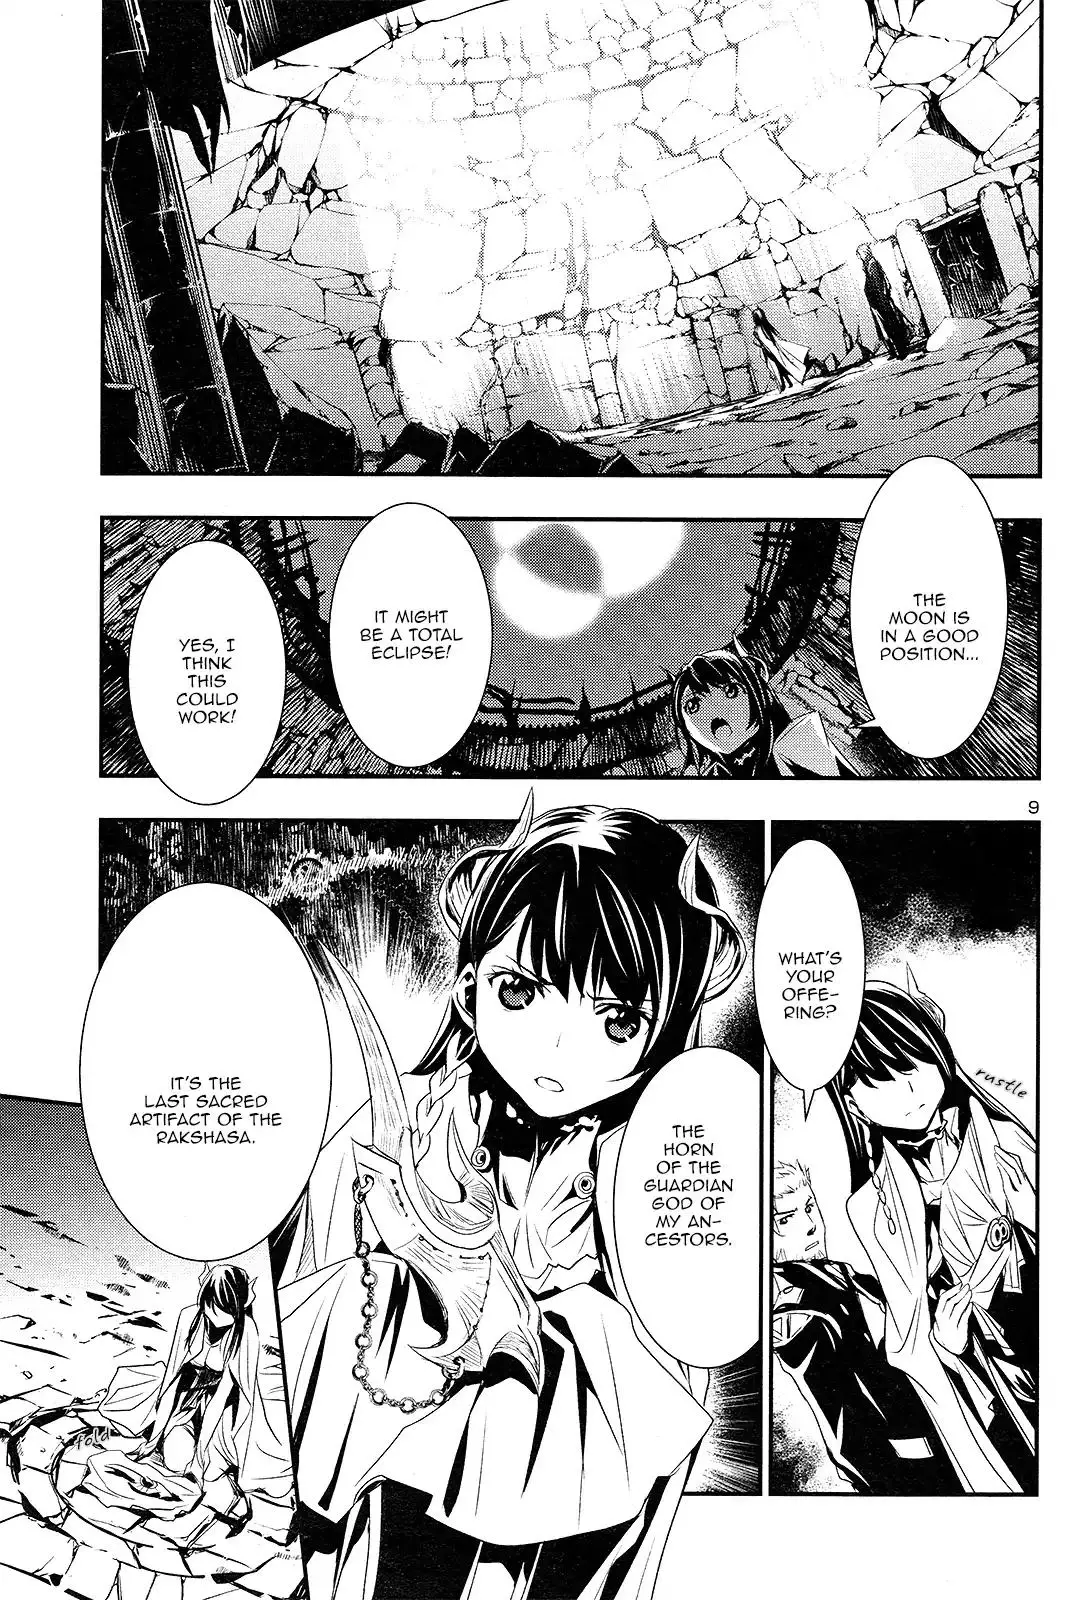 Shinju no Nectar - 1 page 9